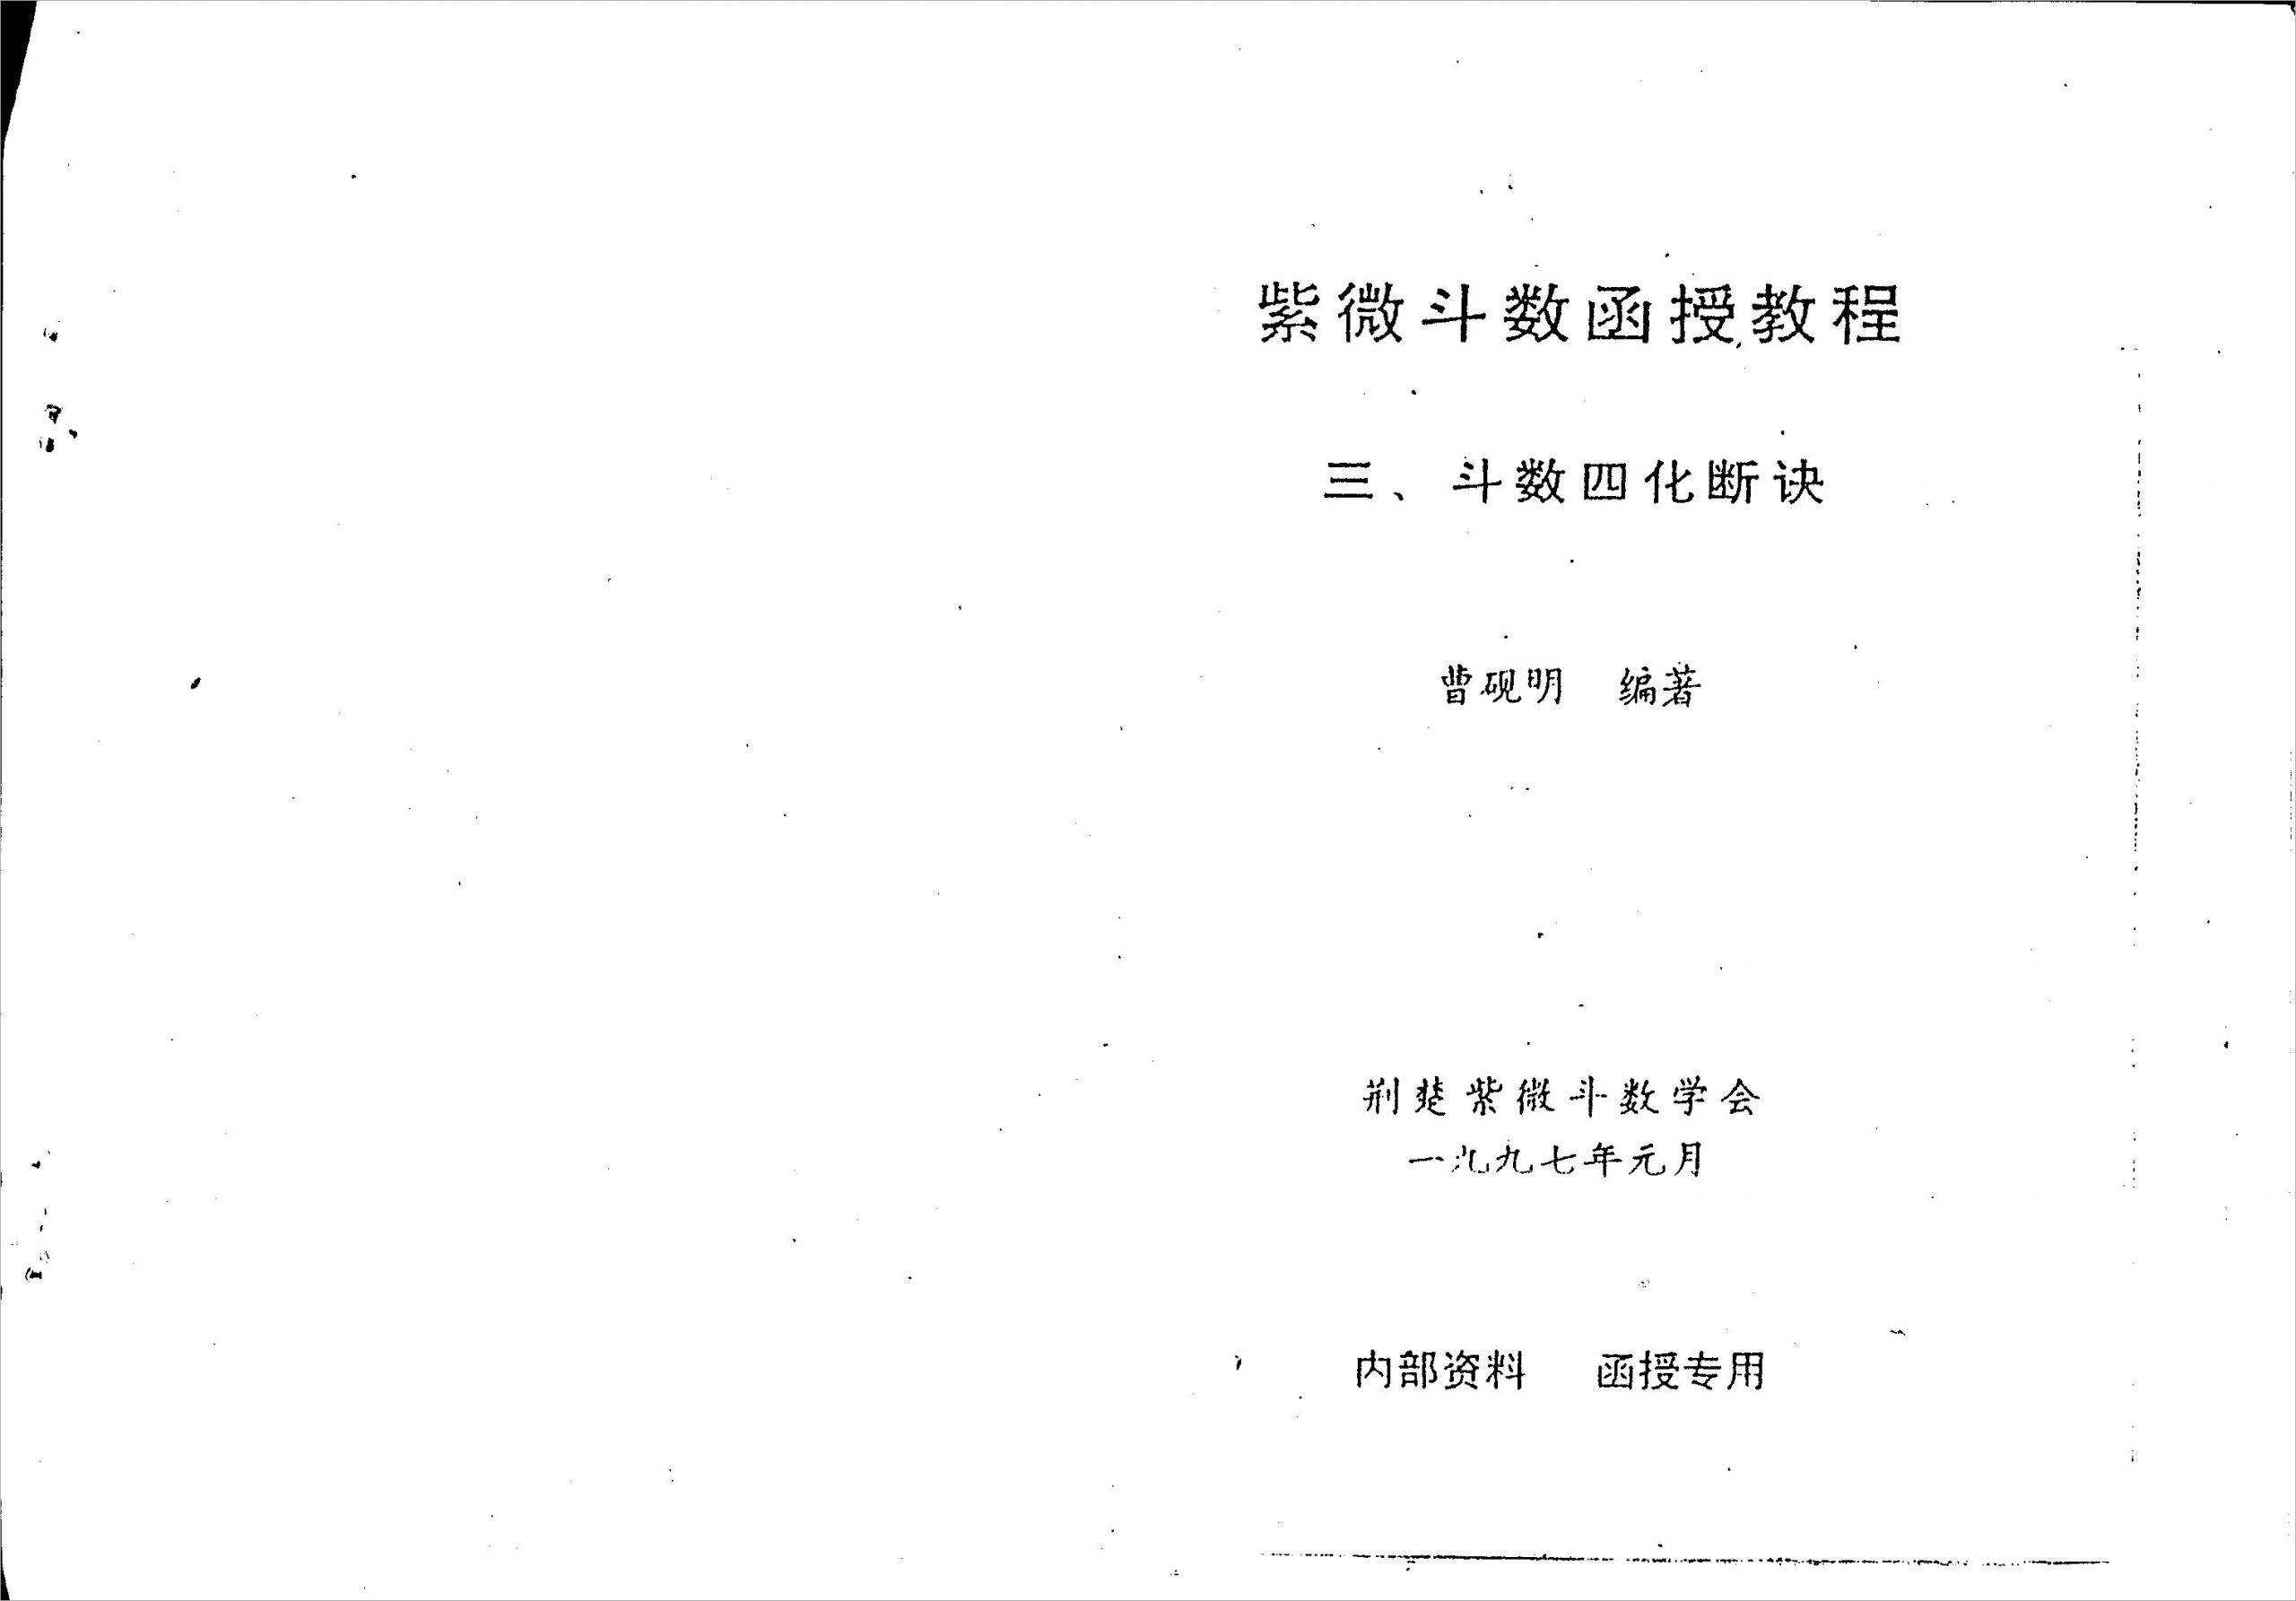 曹砚明-紫微斗数函授教程之三斗数四化断诀（59页）.pdf